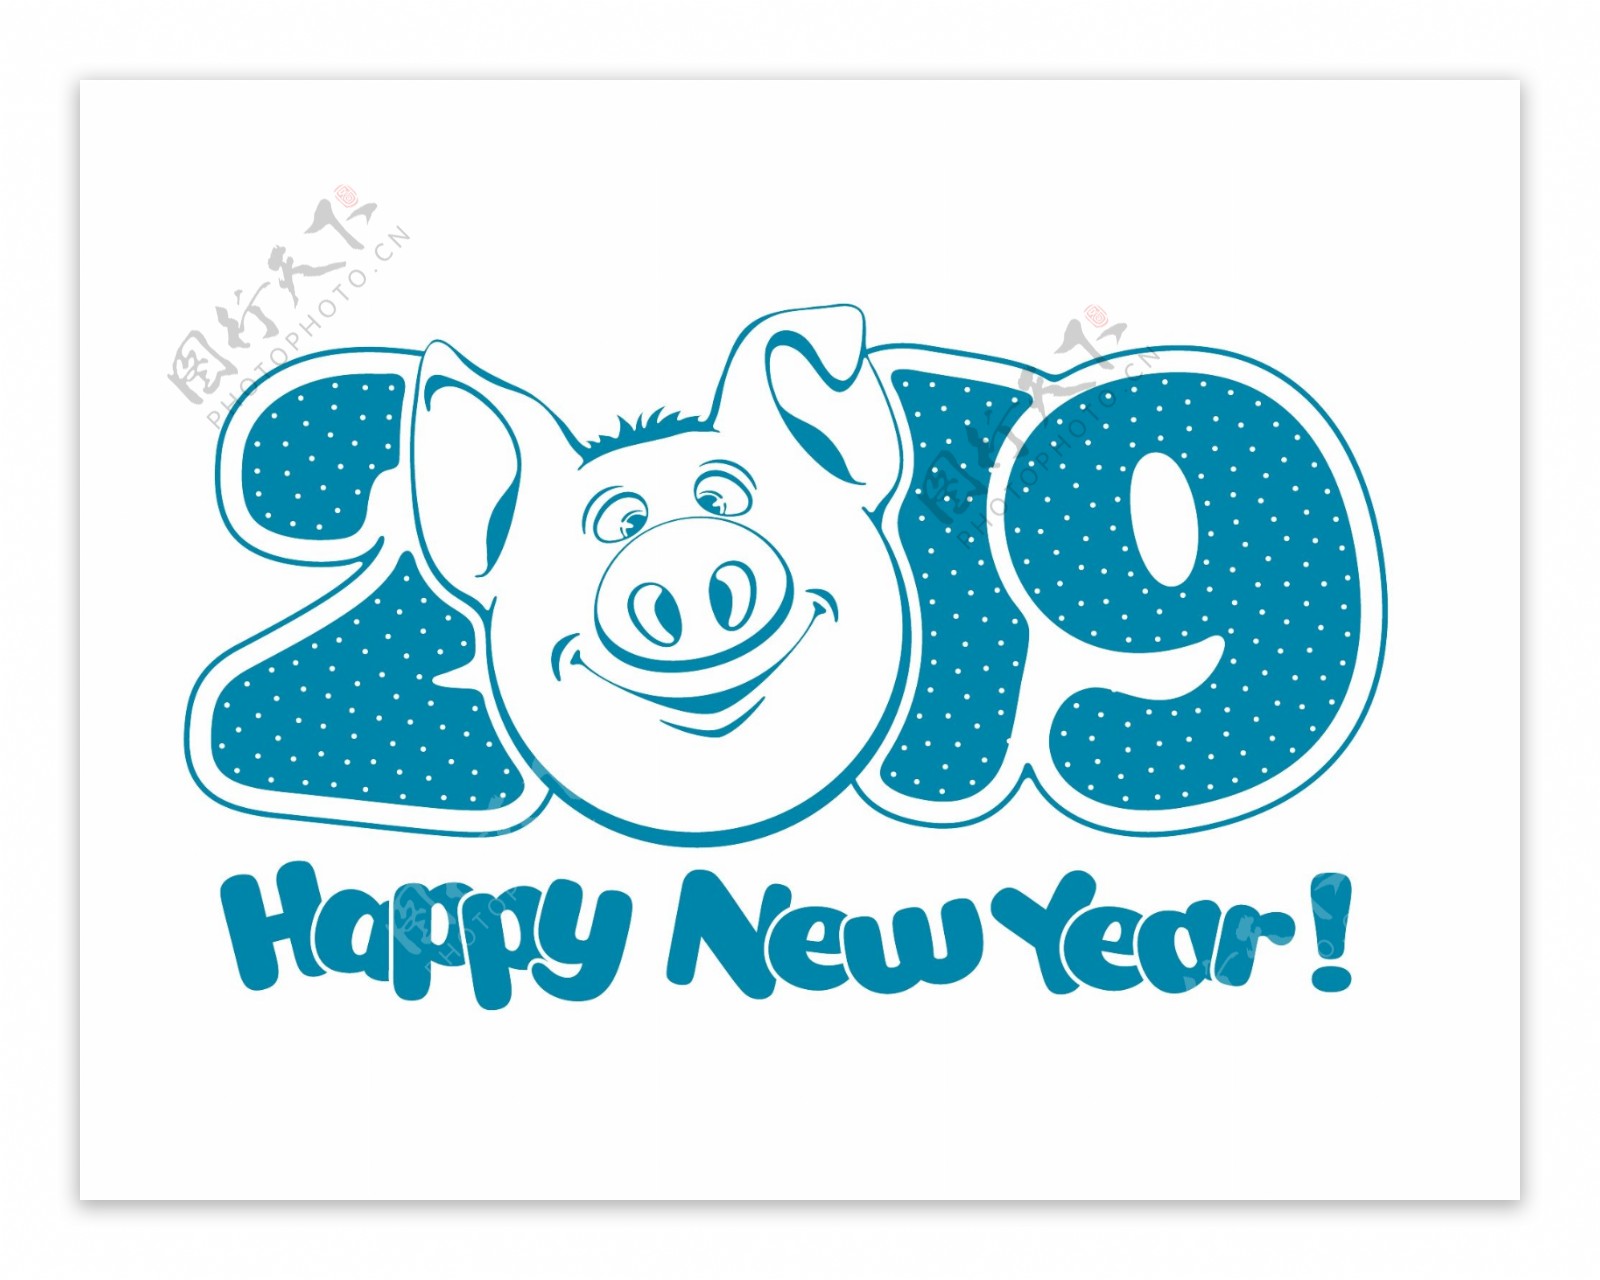 矢量蓝色2019猪年元素